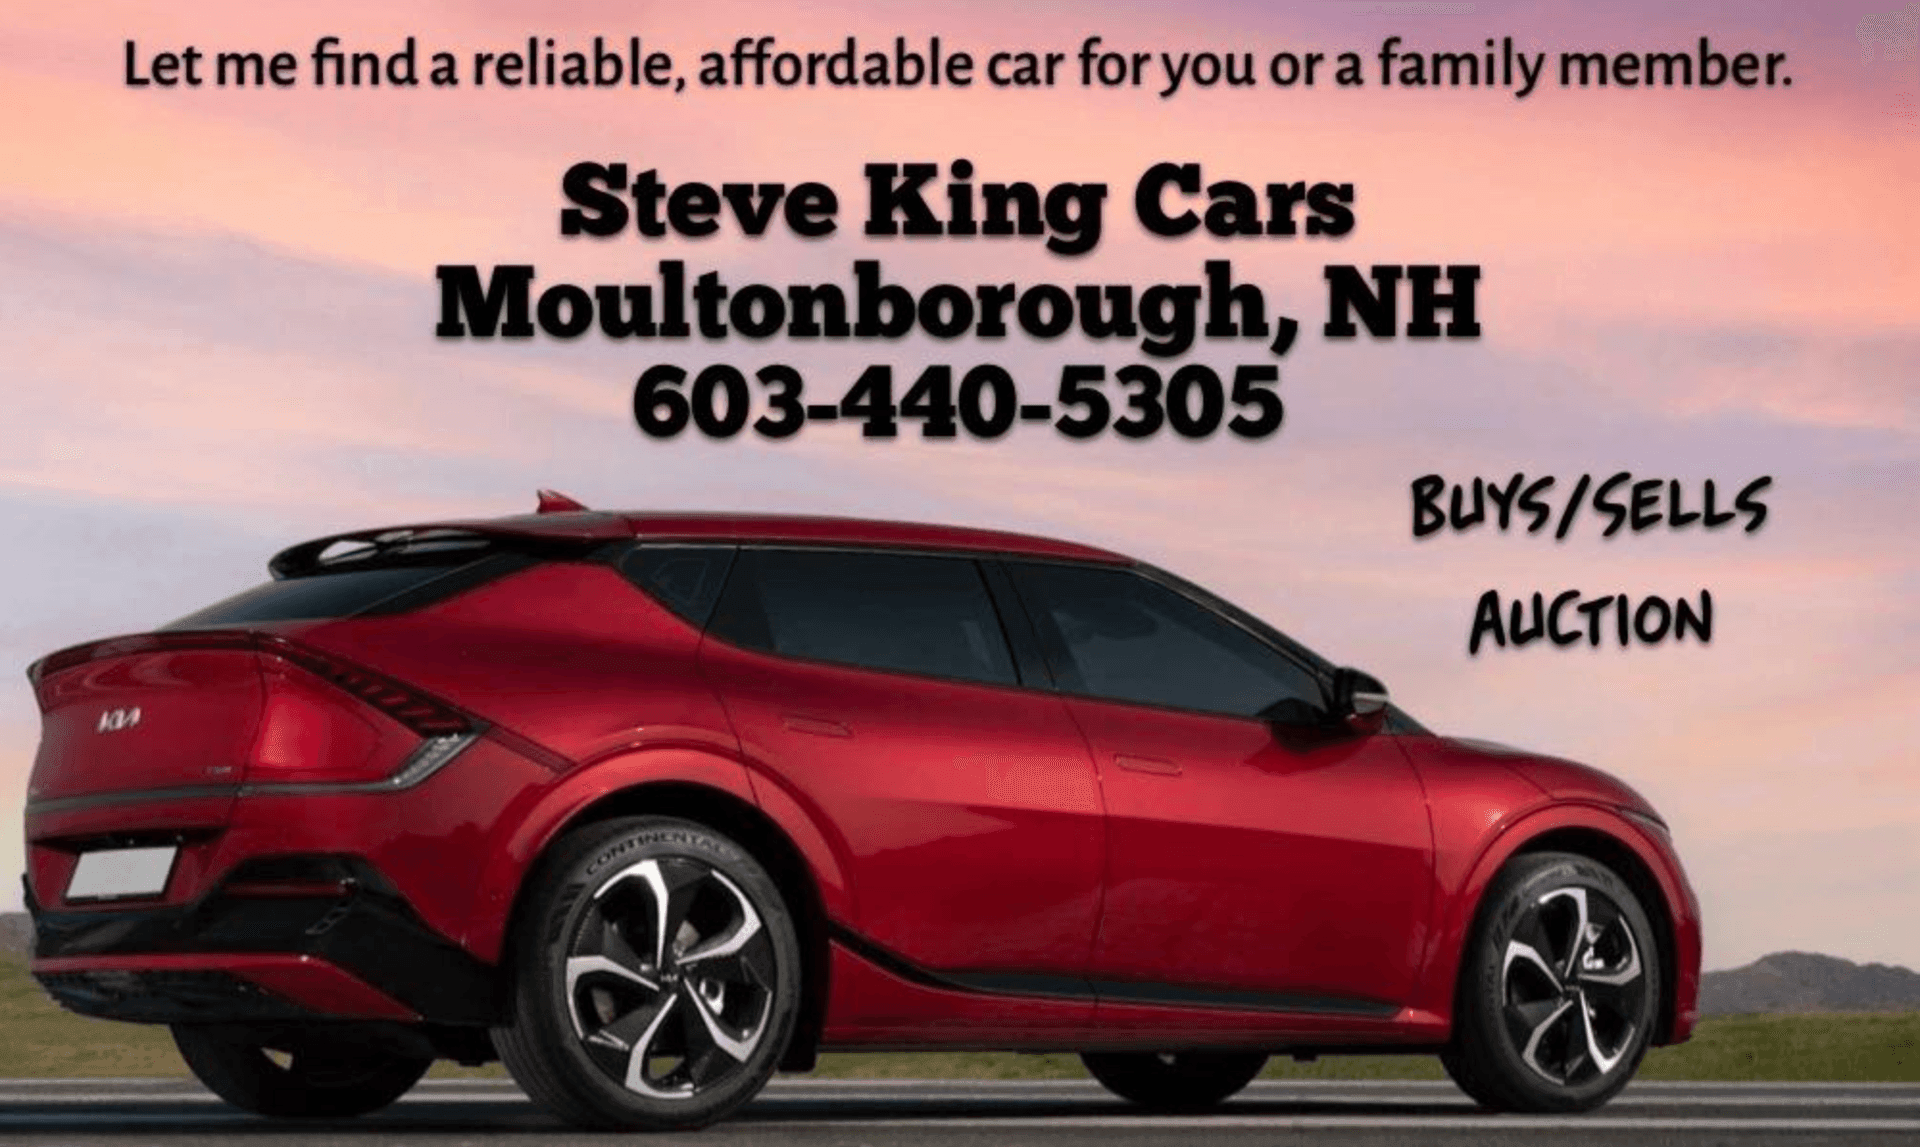 Steve King Cars